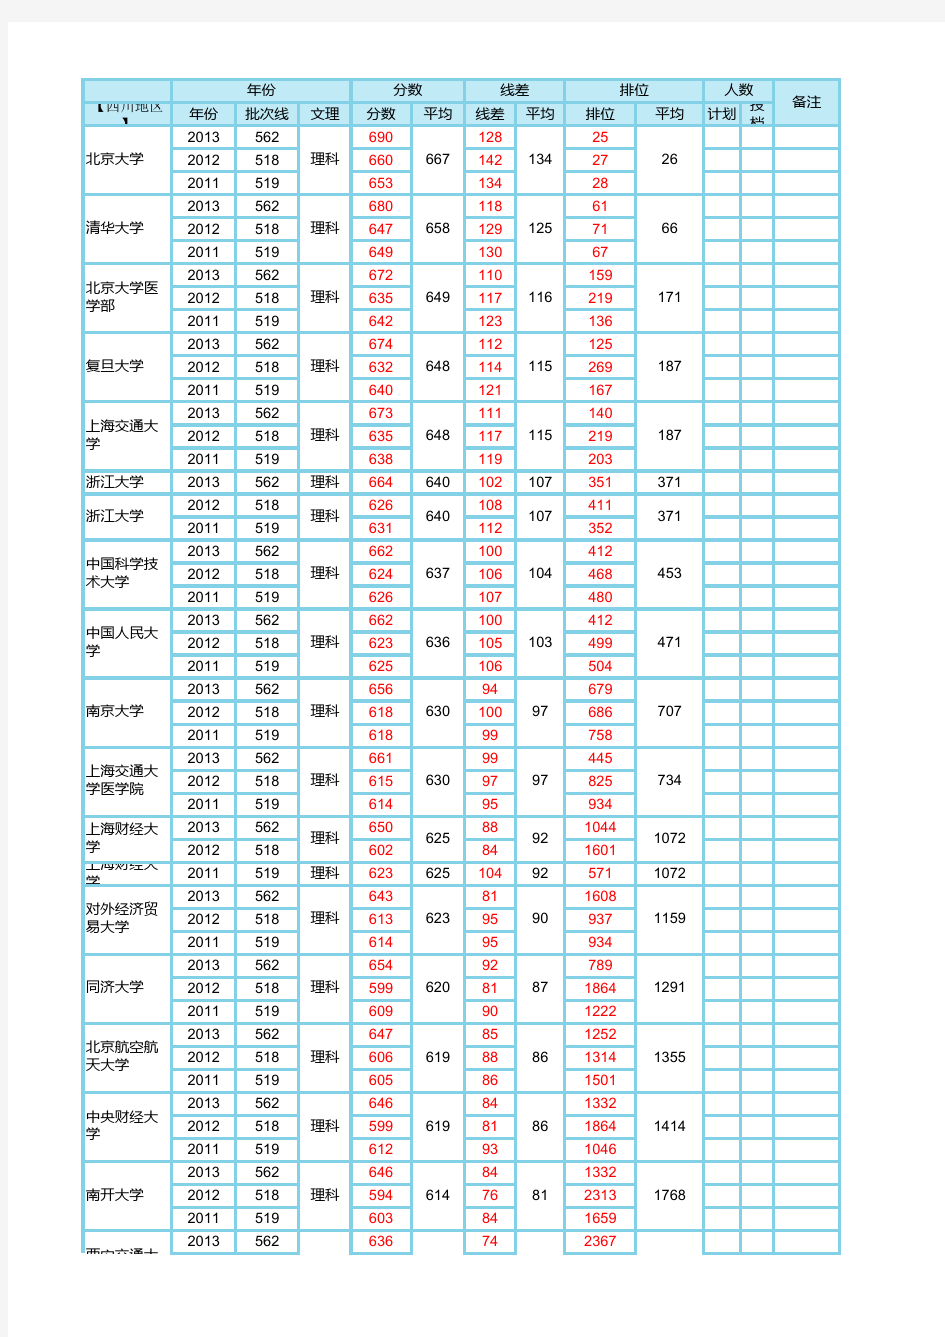 四川省高考2011-2013年一本高校录取平均分及位次表